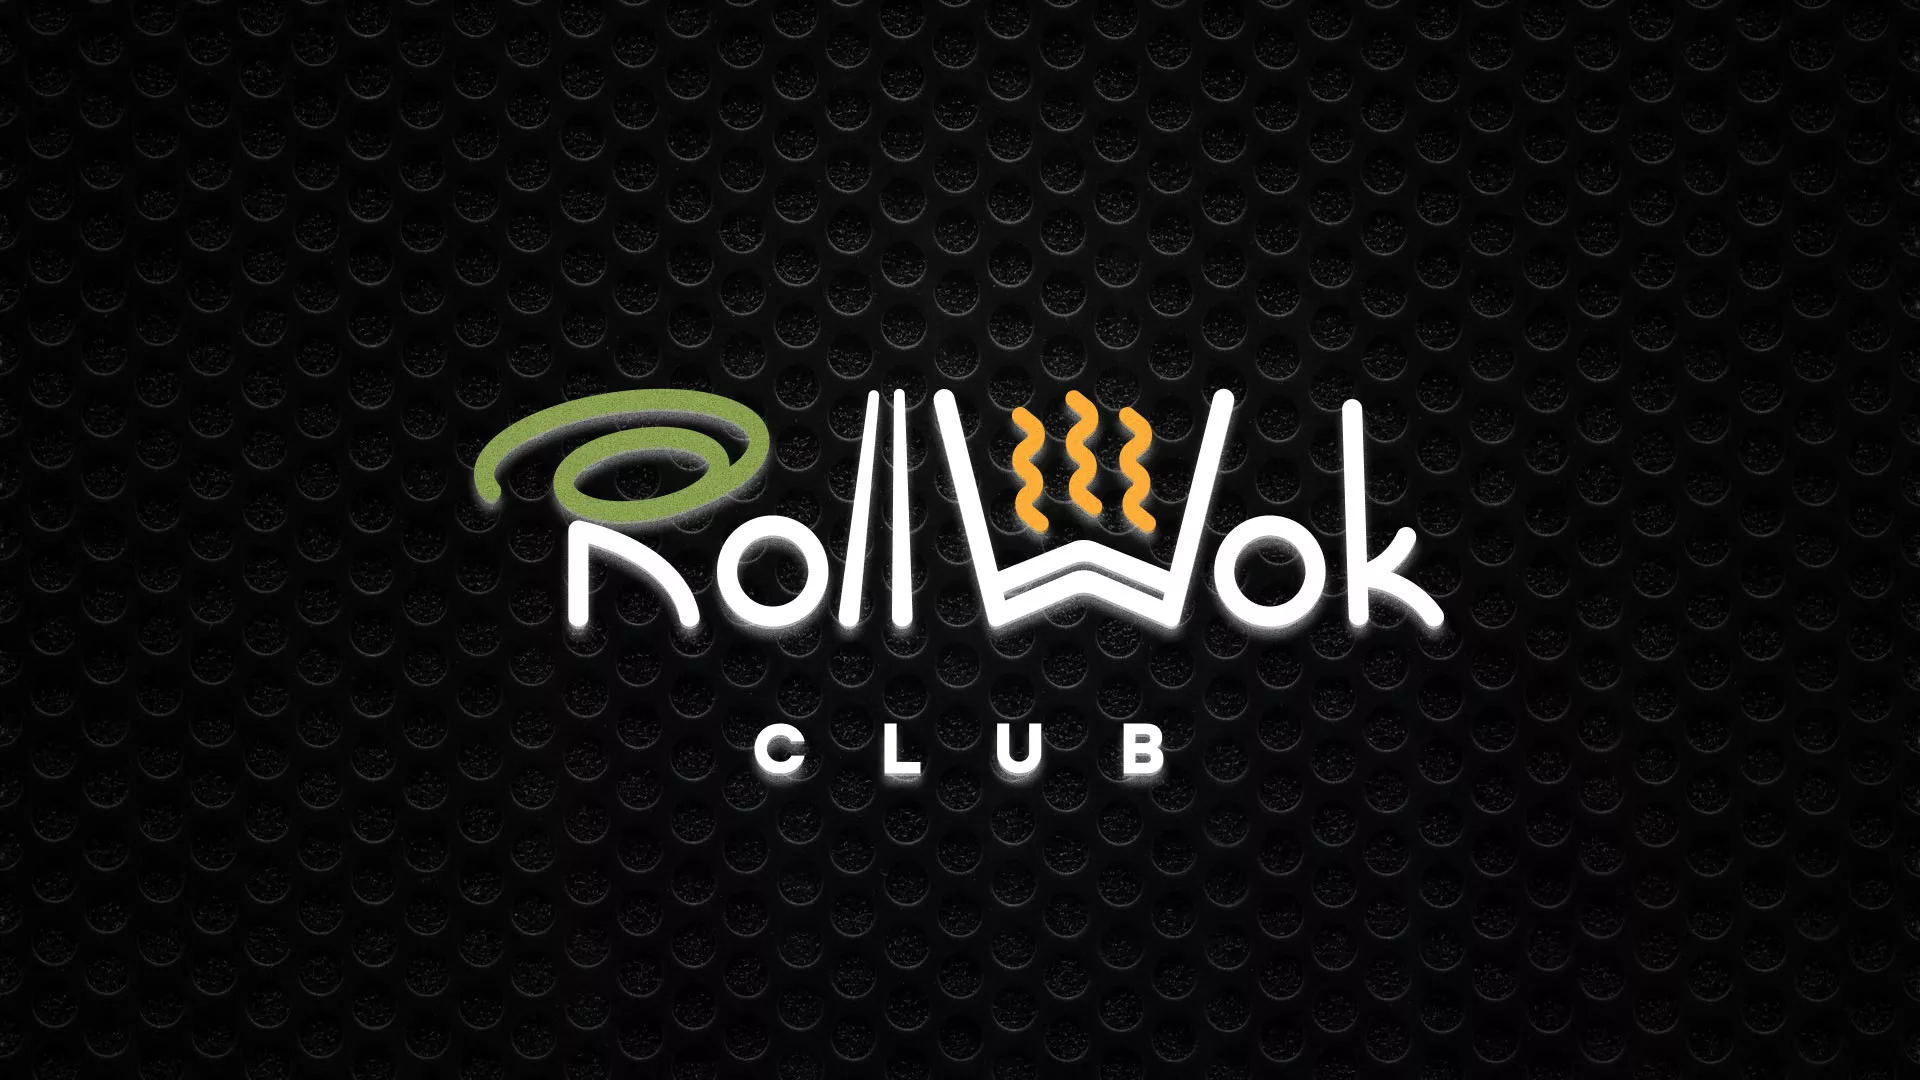 Брендирование торговых точек суши-бара «Roll Wok Club» в Благодарном